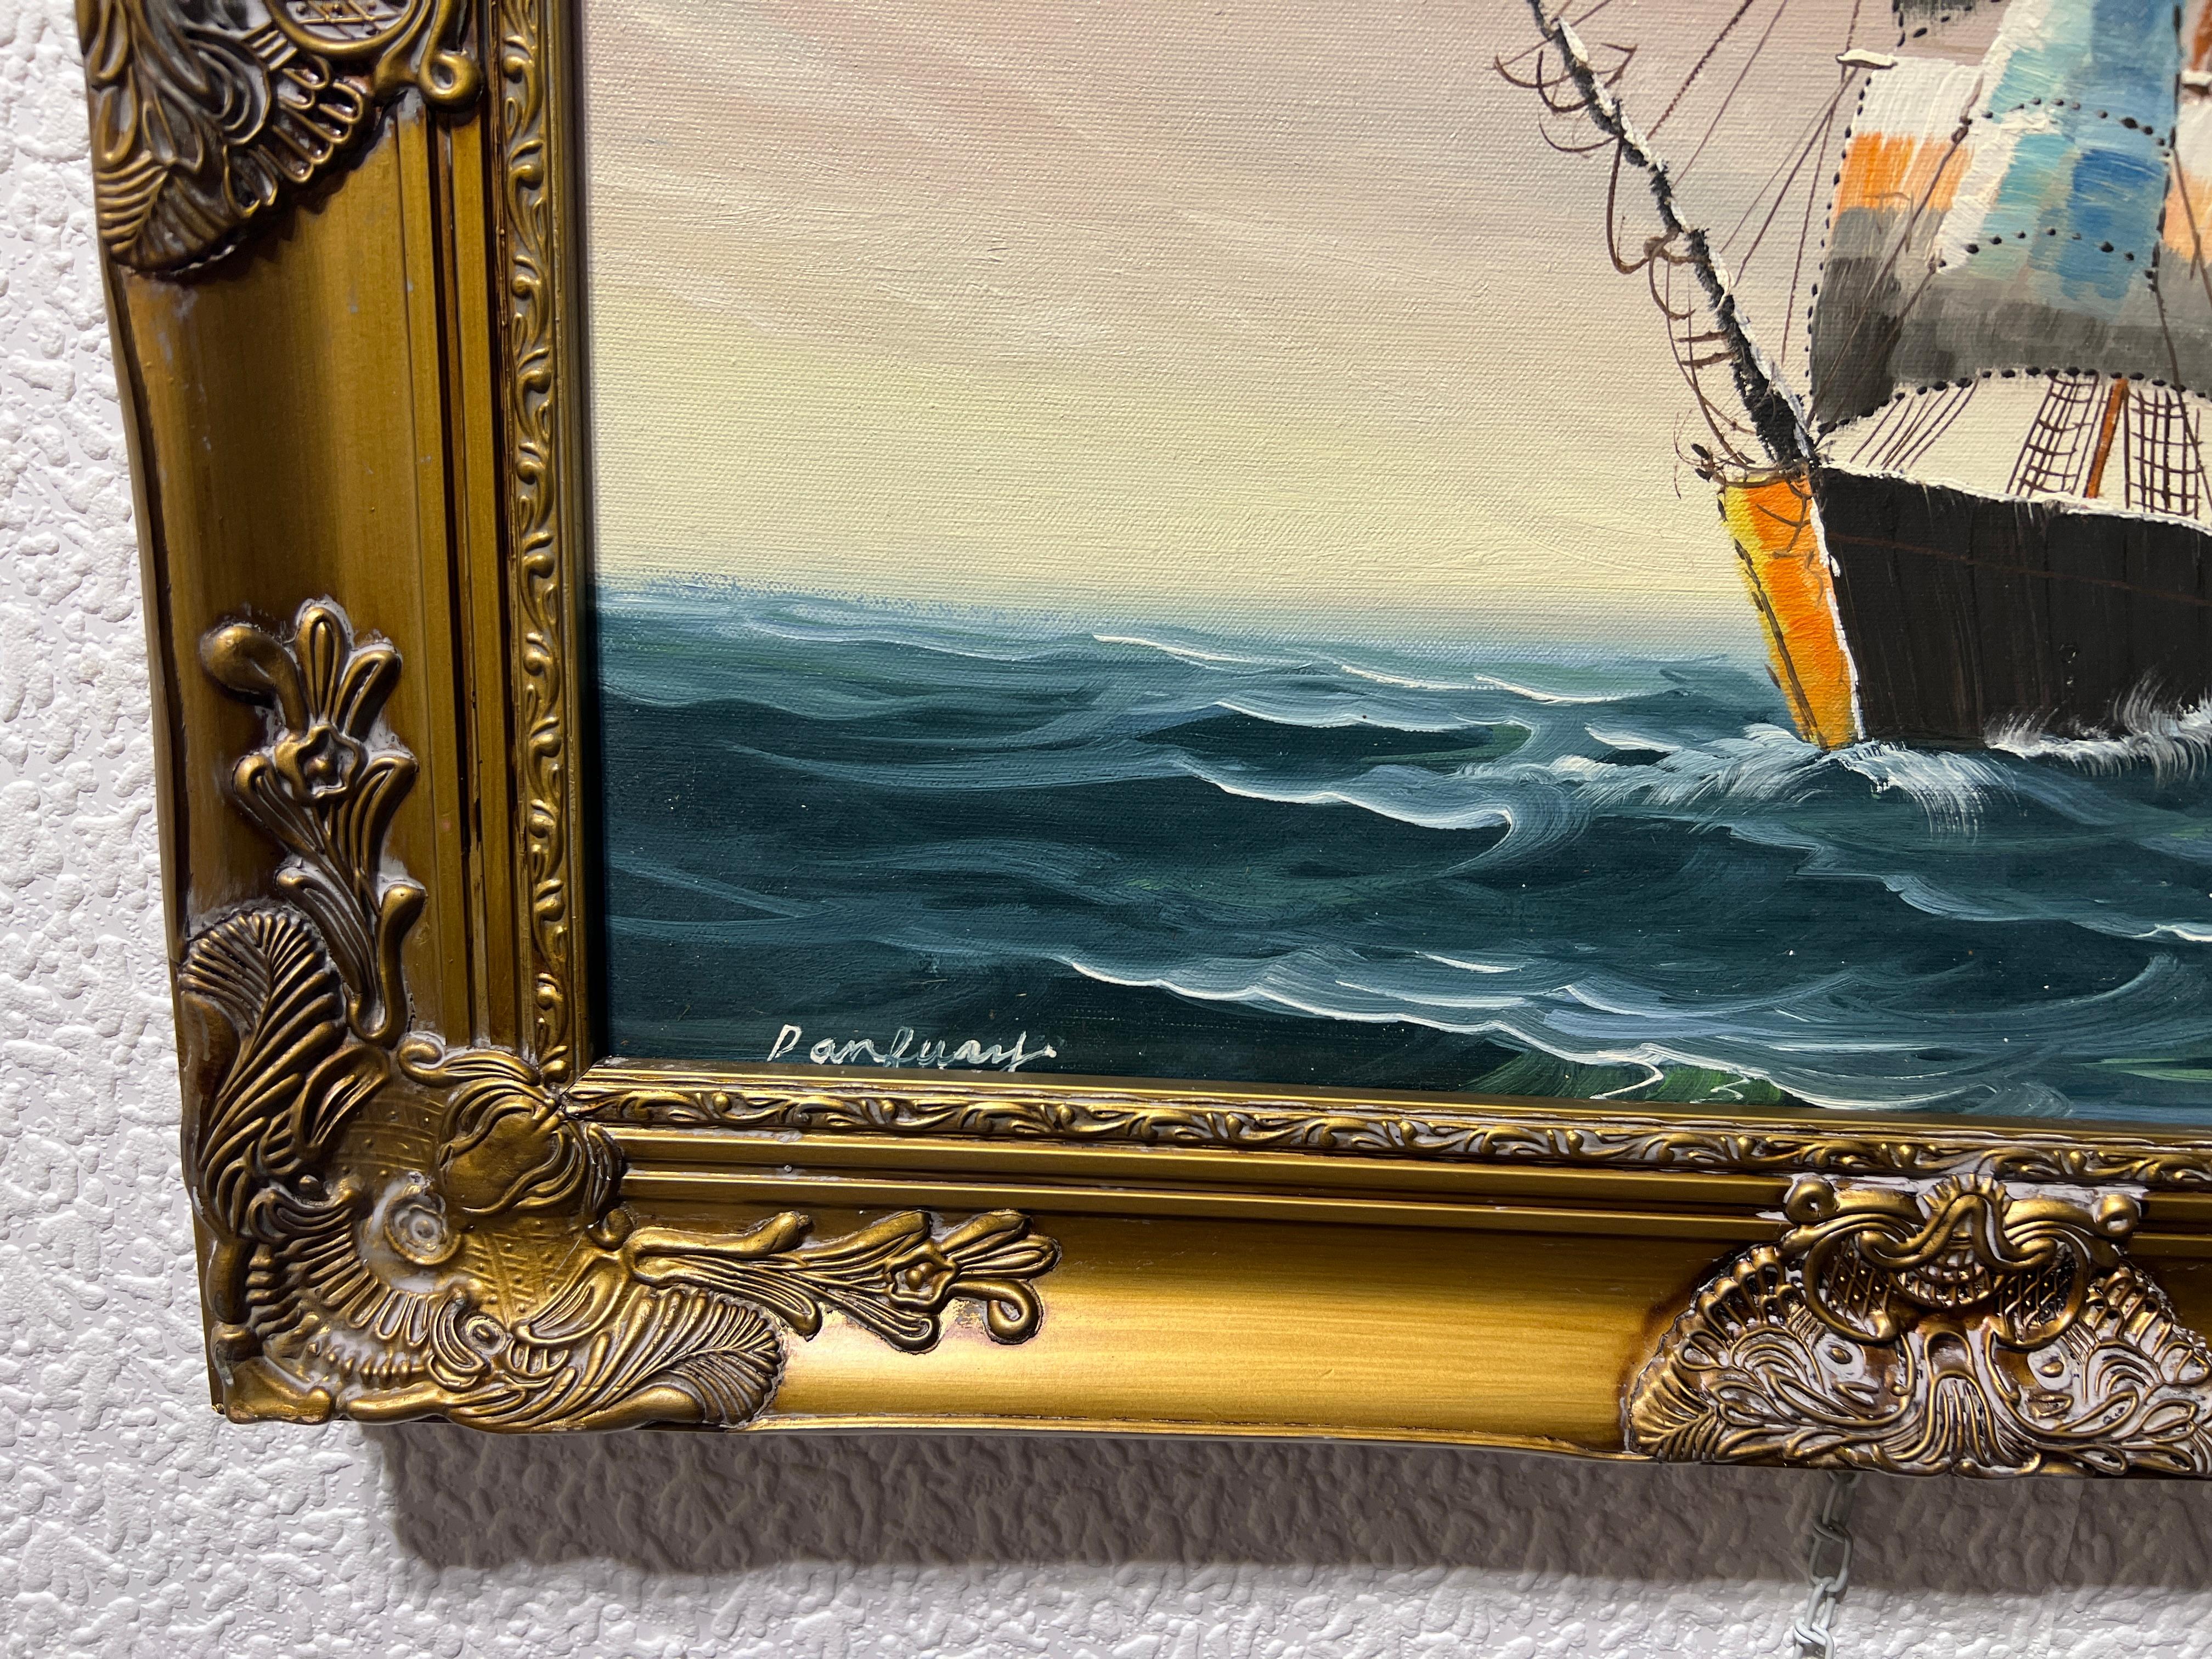 Il s'agit d'une peinture à l'huile originale sur toile - un paysage marin représentant un voilier dans l'océan déchaîné dépeint une scène dramatique et turbulente avec le navire luttant contre les forces de la nature. Les vagues sont hautes et